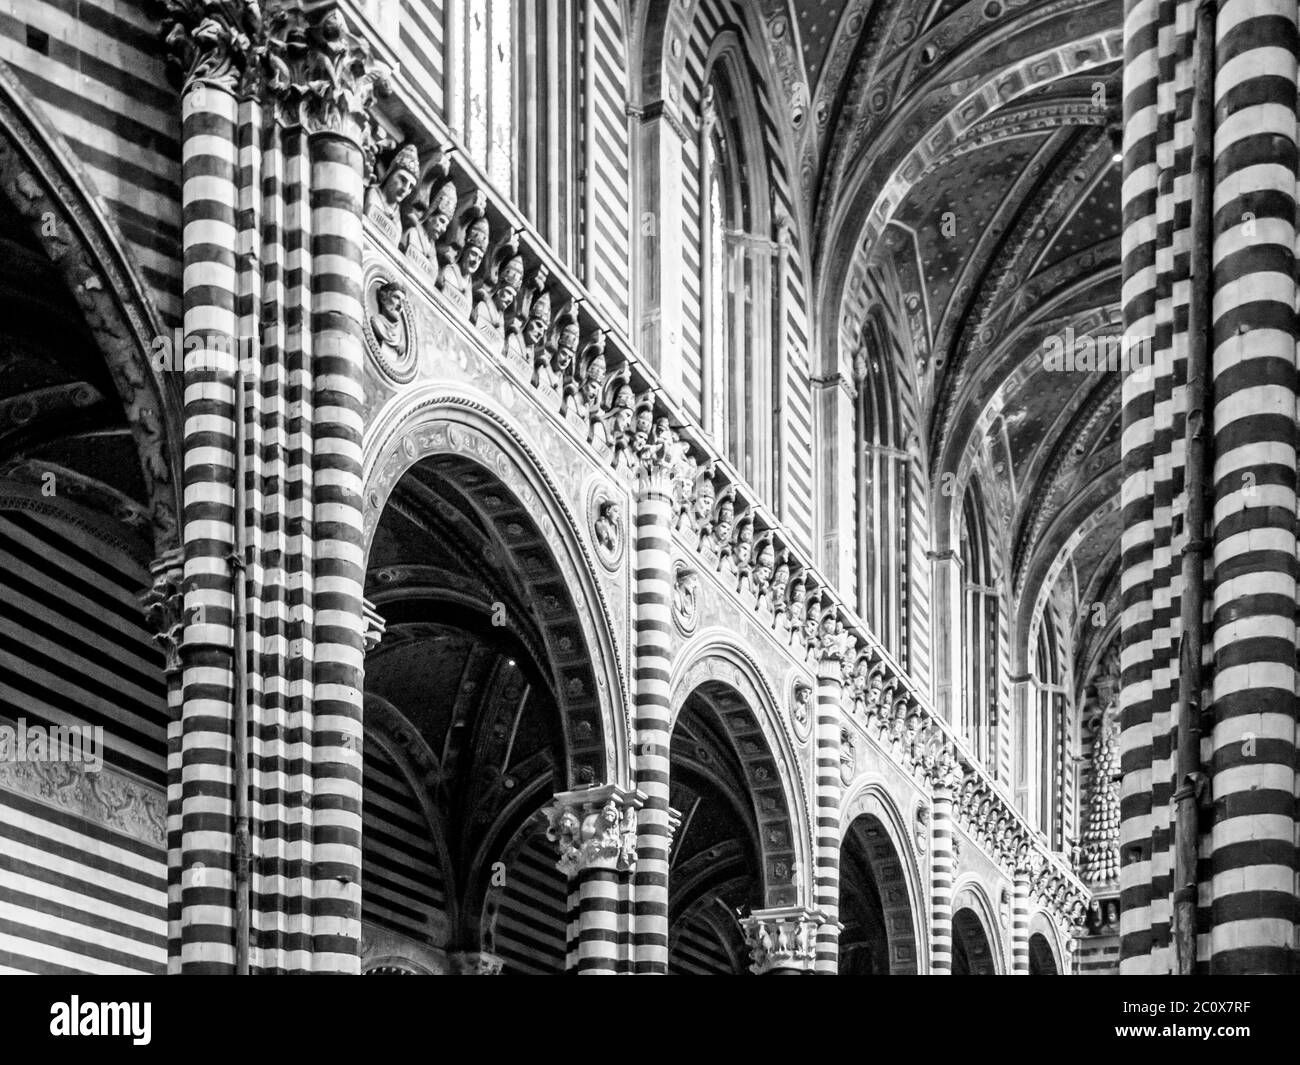 Intérieur de la cathédrale Santa Maria Assunta, Sienne, Italie Banque D'Images